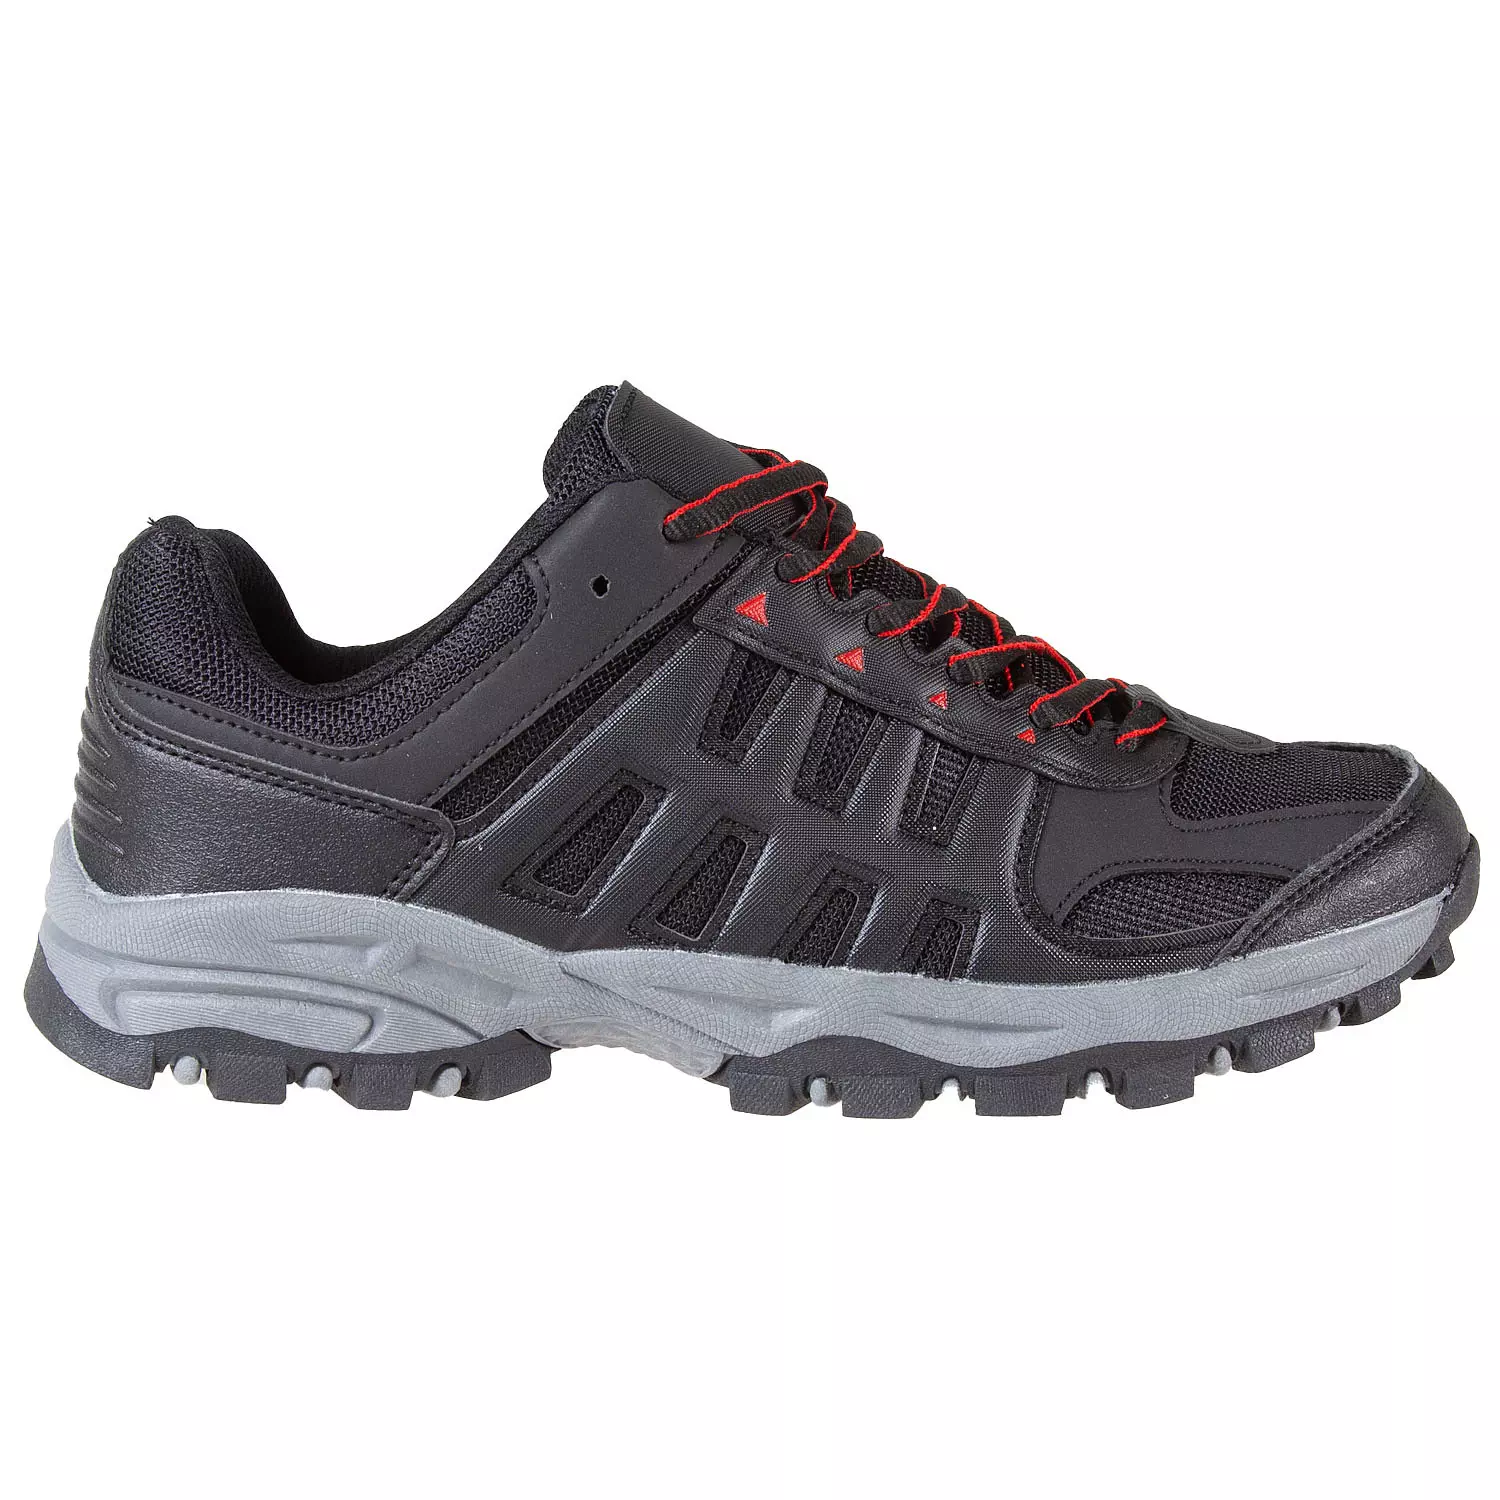 Men's lace-up, low-cut hiking shoes, size 8